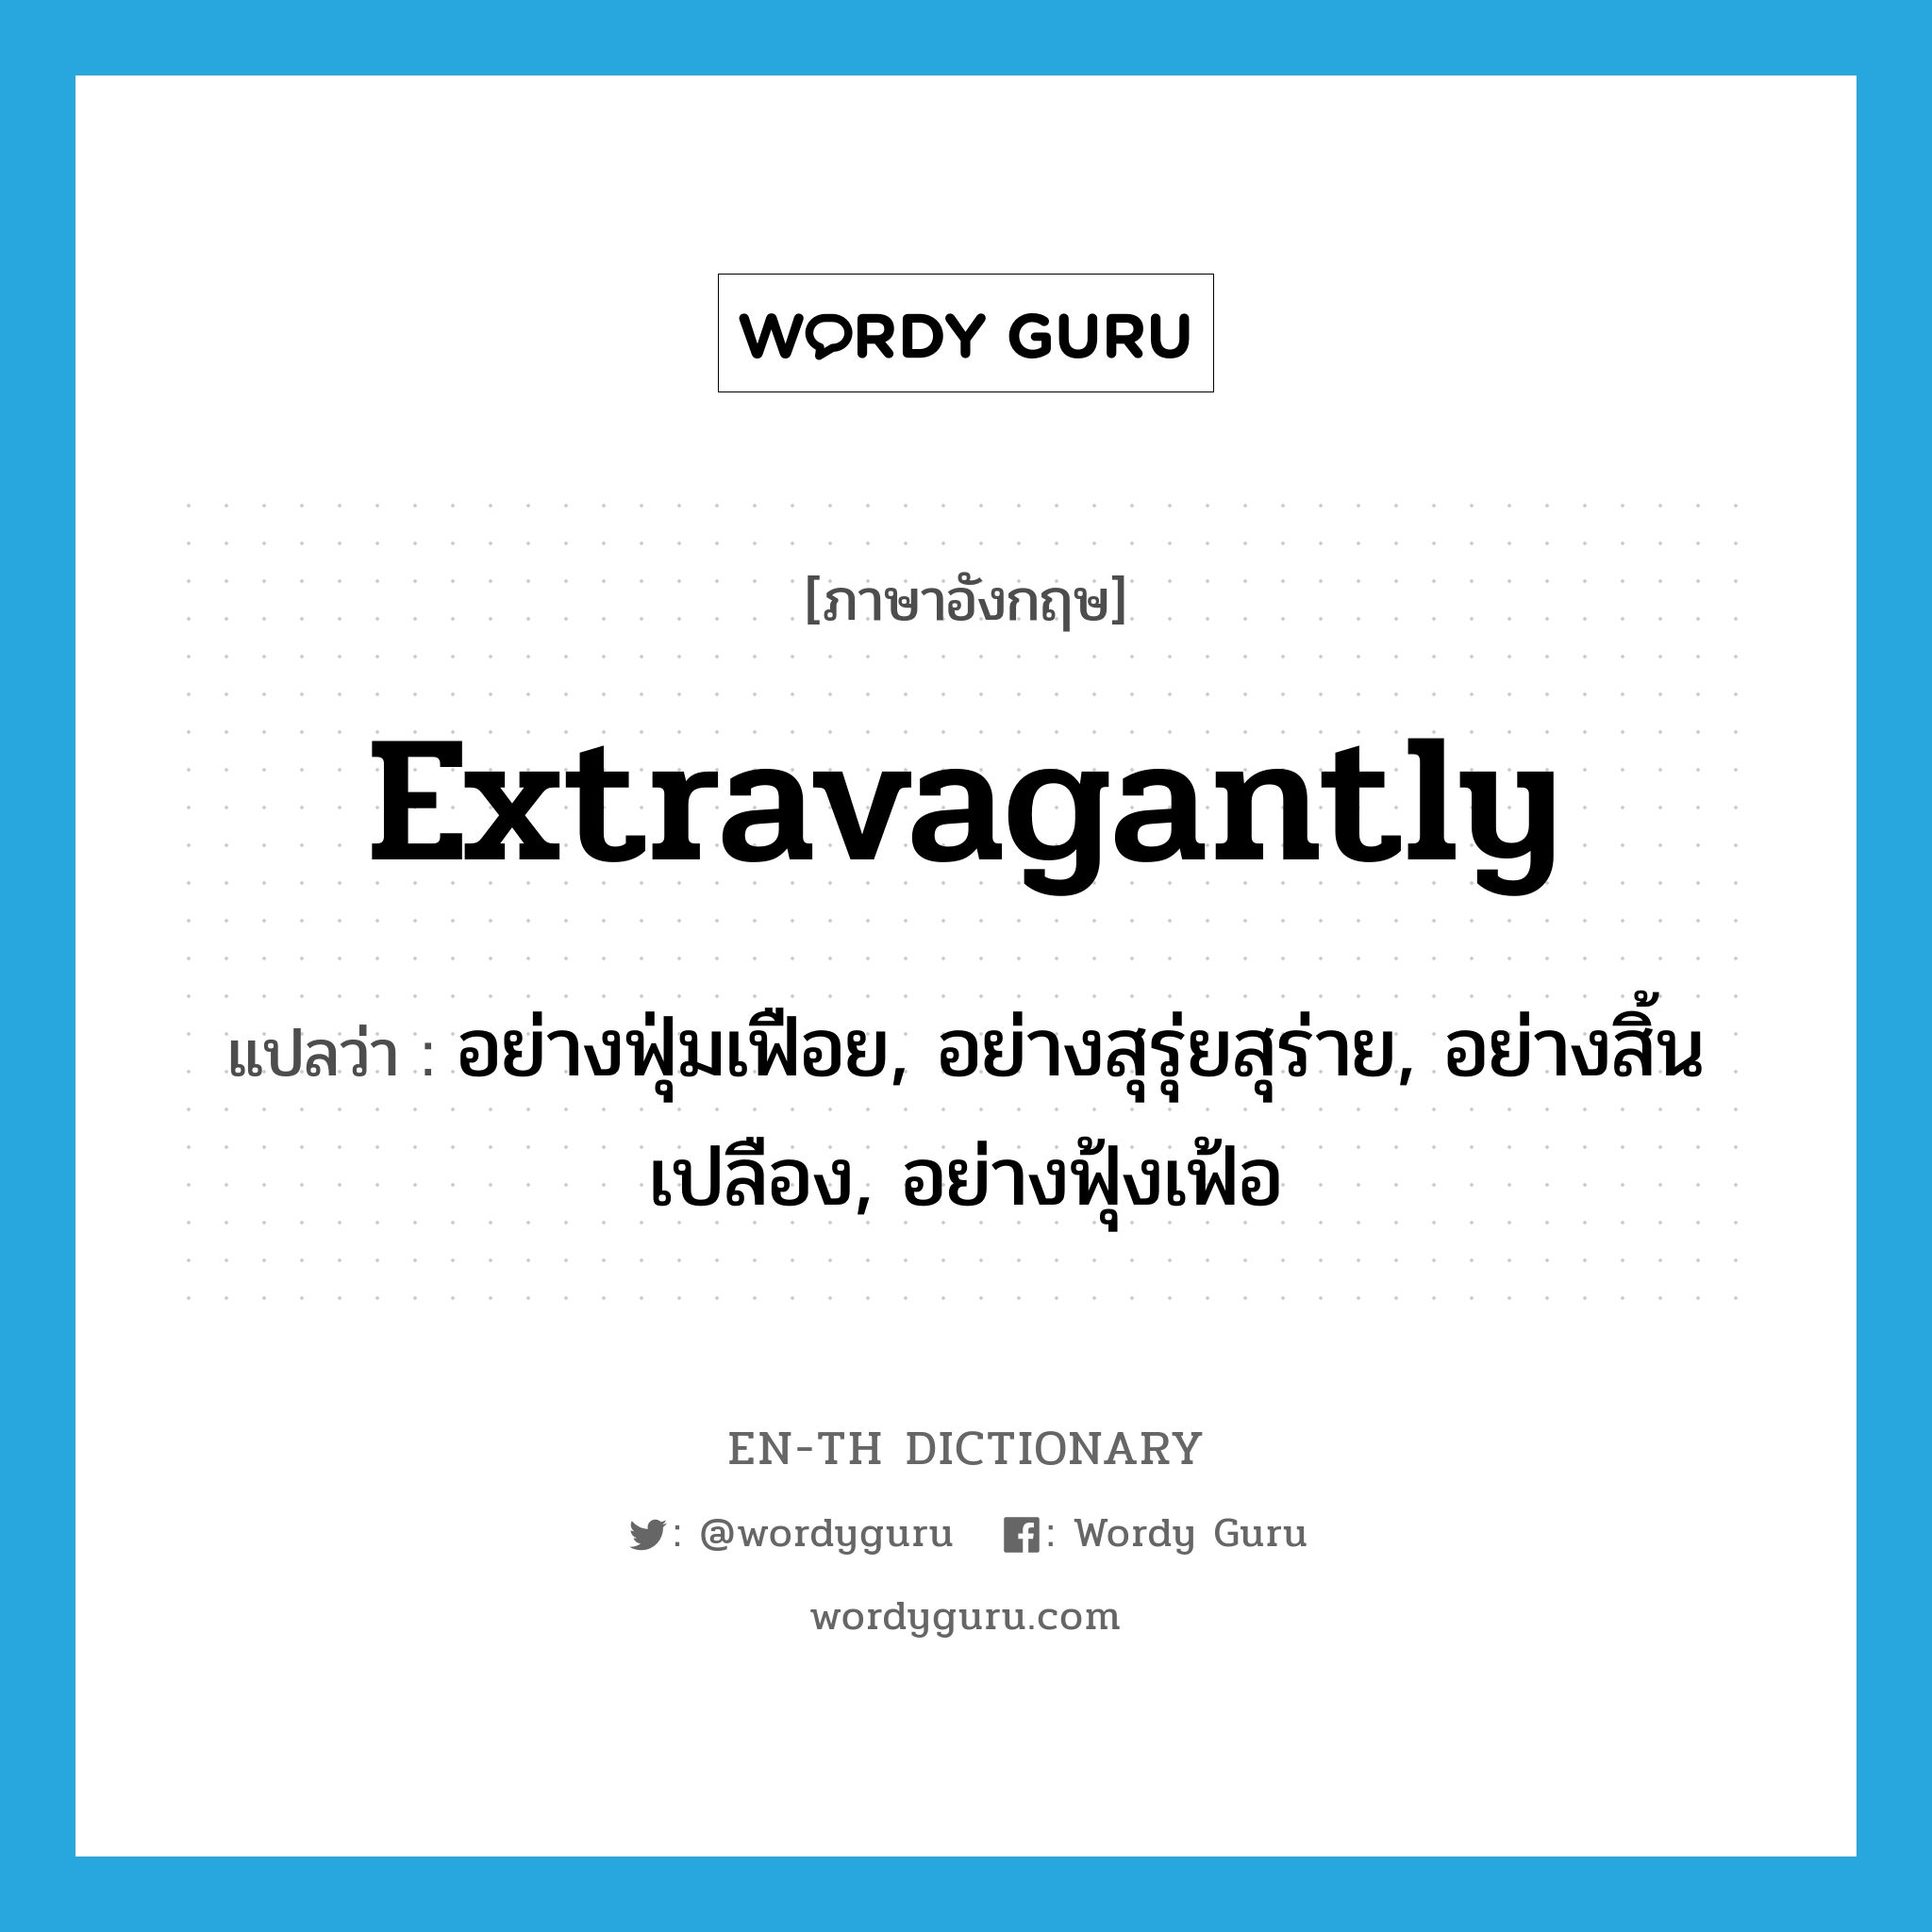 extravagantly แปลว่า?, คำศัพท์ภาษาอังกฤษ extravagantly แปลว่า อย่างฟุ่มเฟือย, อย่างสุรุ่ยสุร่าย, อย่างสิ้นเปลือง, อย่างฟุ้งเฟ้อ ประเภท ADV หมวด ADV